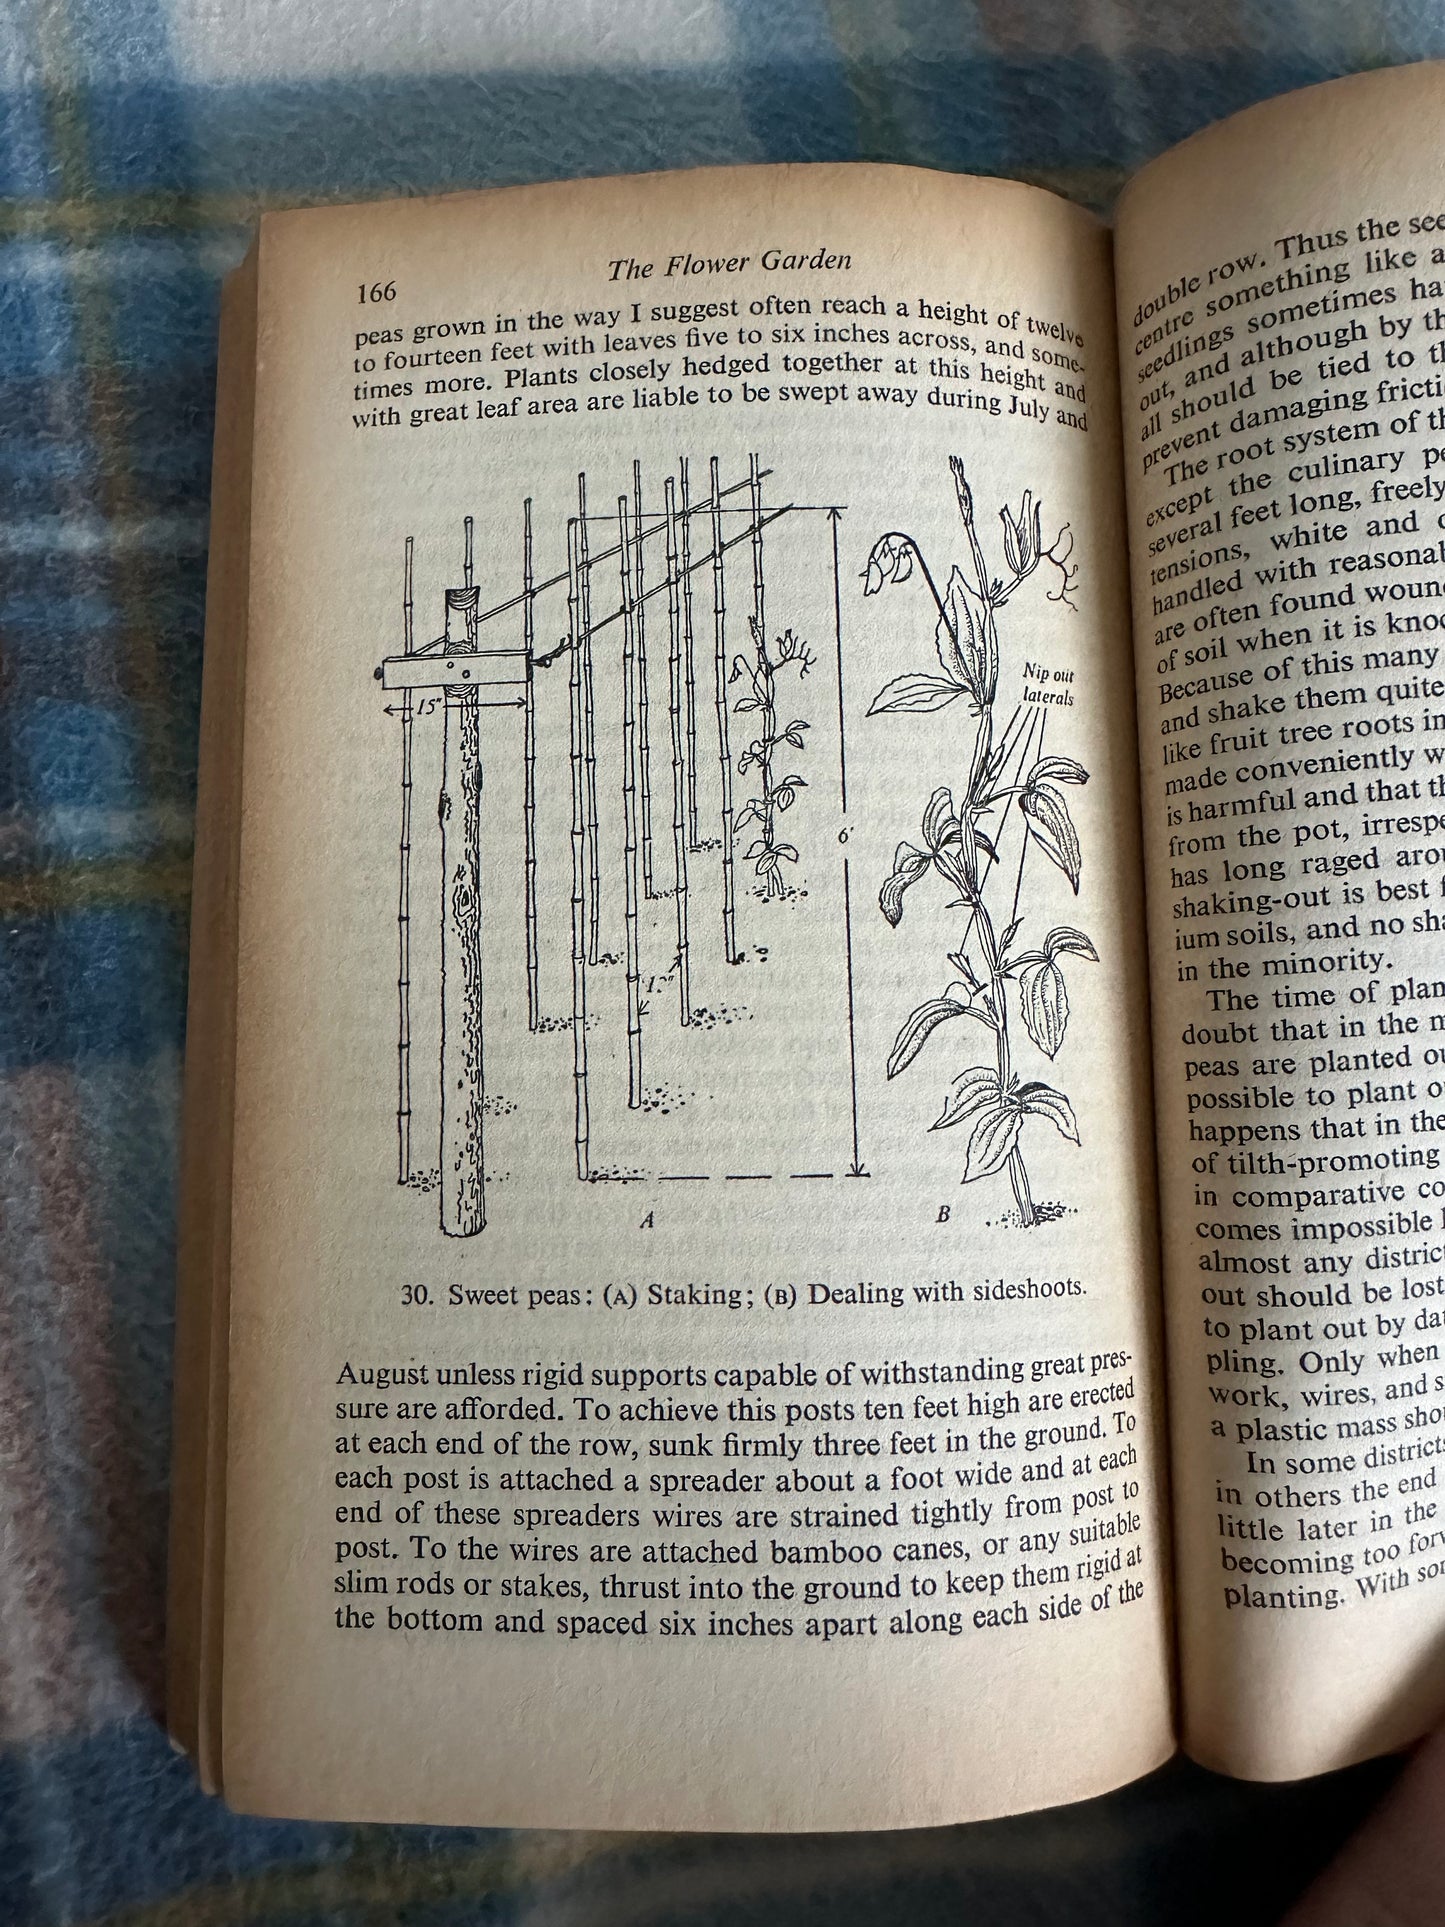 1953 The Flower Garden -E.R.Janes(Penguin Handbook)